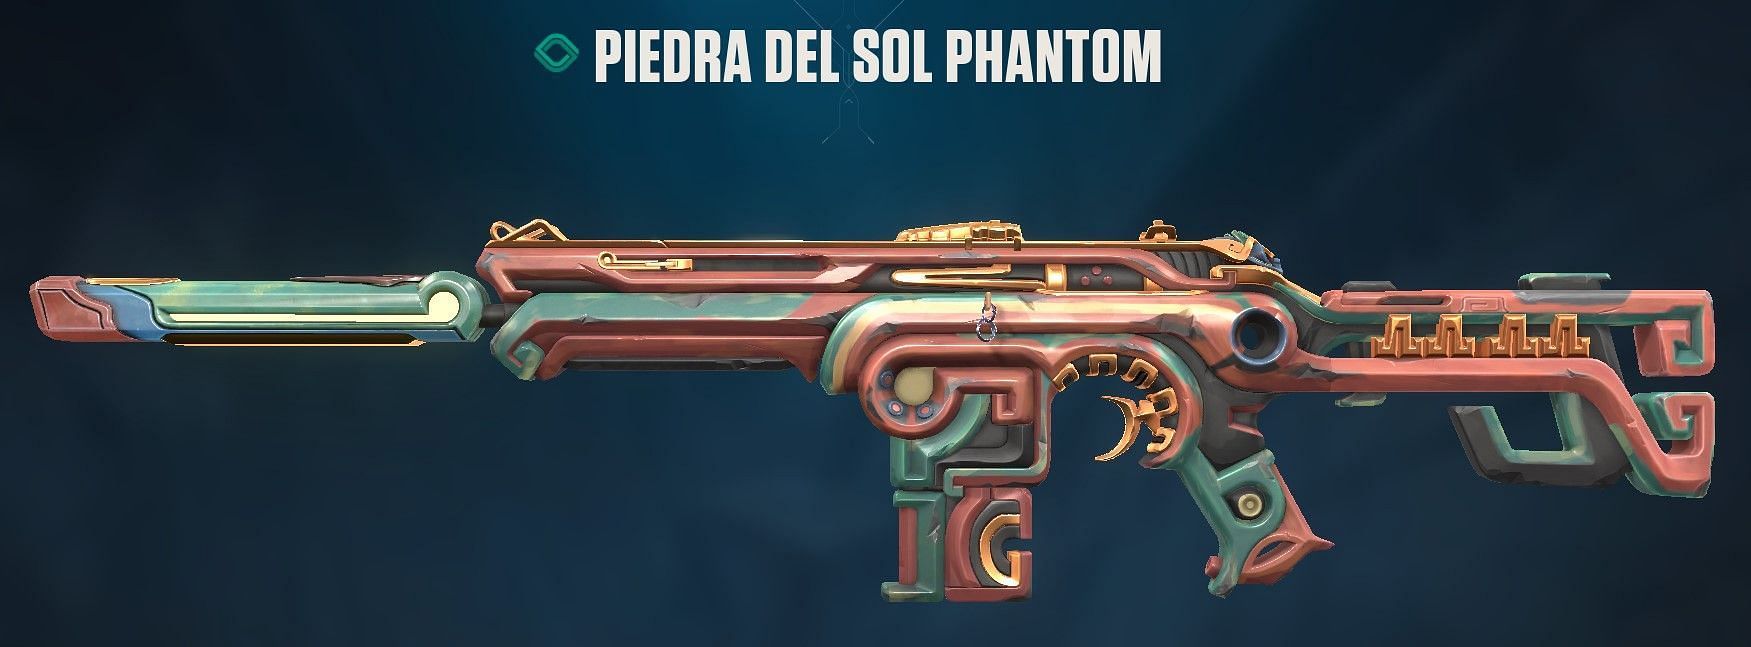 Piedra Del Sol Phantom (Image via Riot Games)